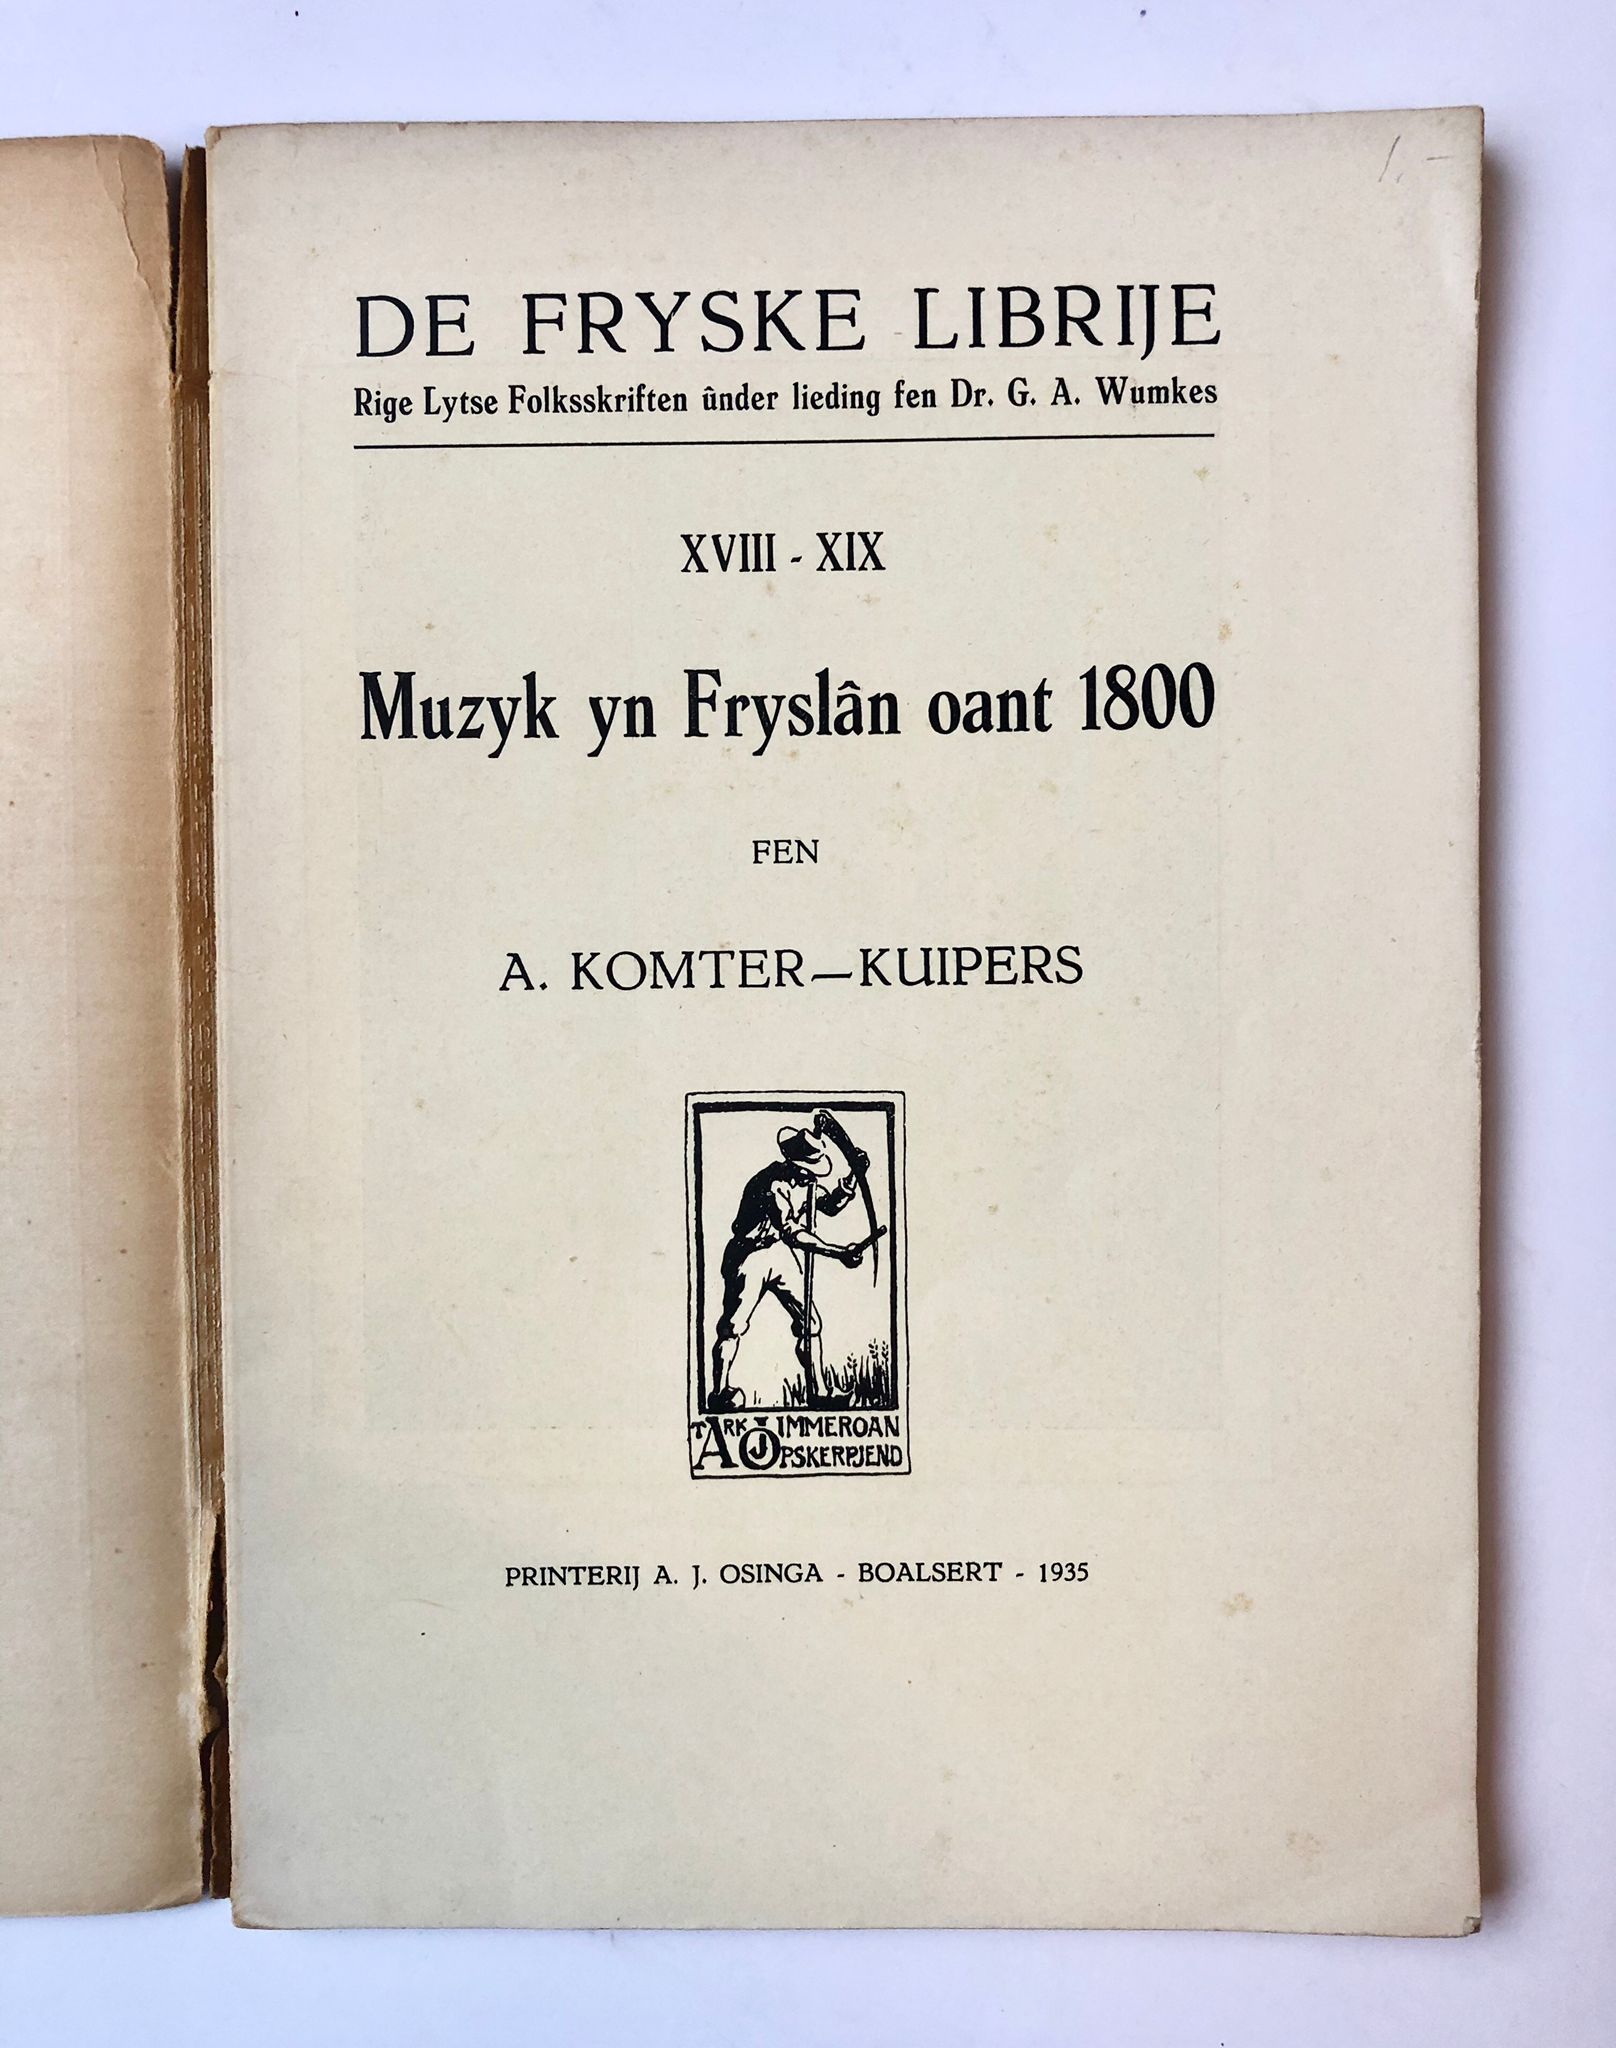 [Friesland, Boalsert] De Fryske Librije Rige Lytse Folksskriften, Muzyk yn Fryslân oant 1800, A. J. Osinga, Boalsert, 1935, 98 pp.